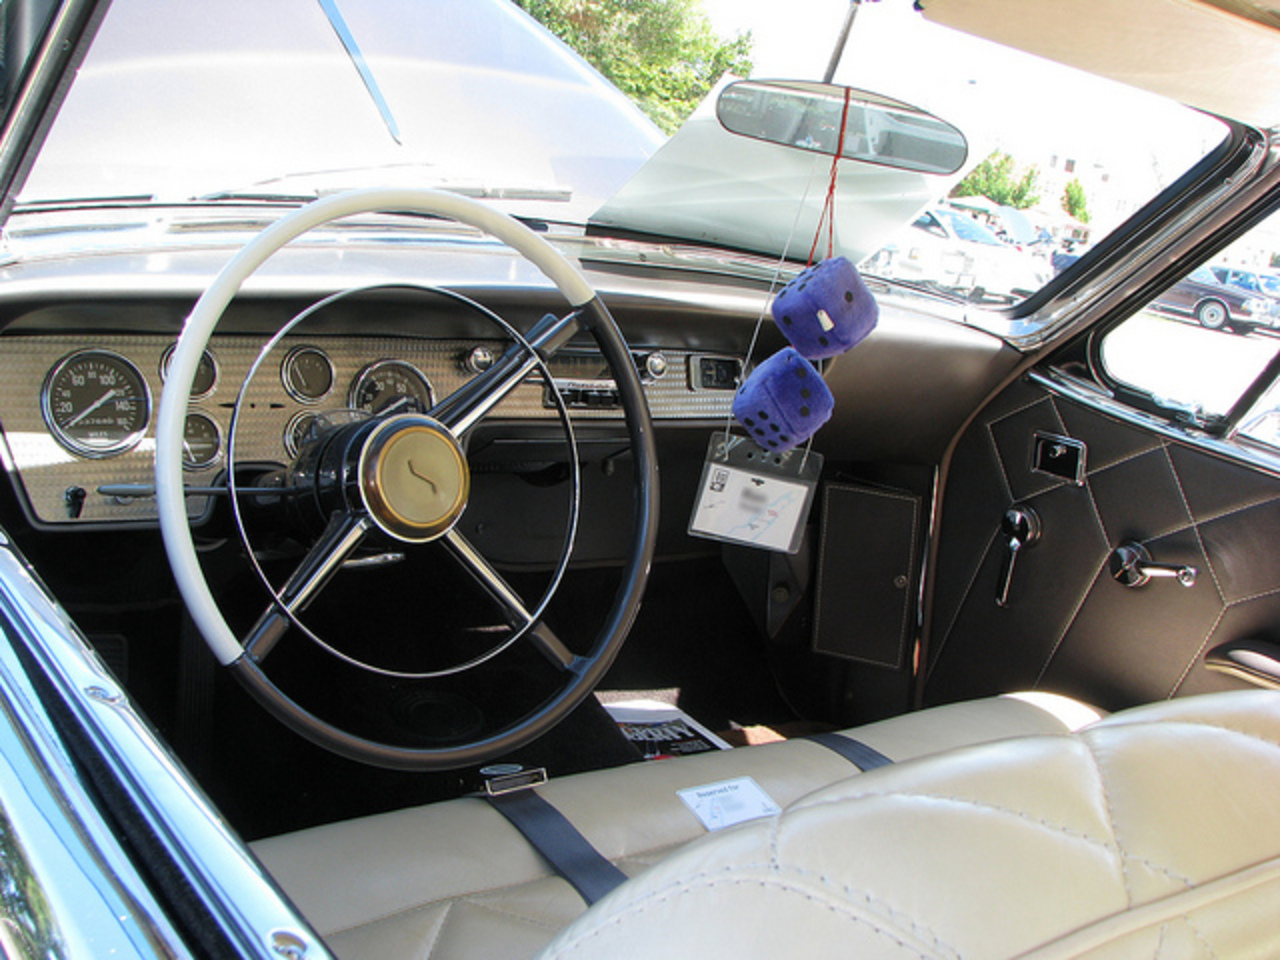 1955 Studebaker President Speedster interior | Flickr - Photo Sharing!